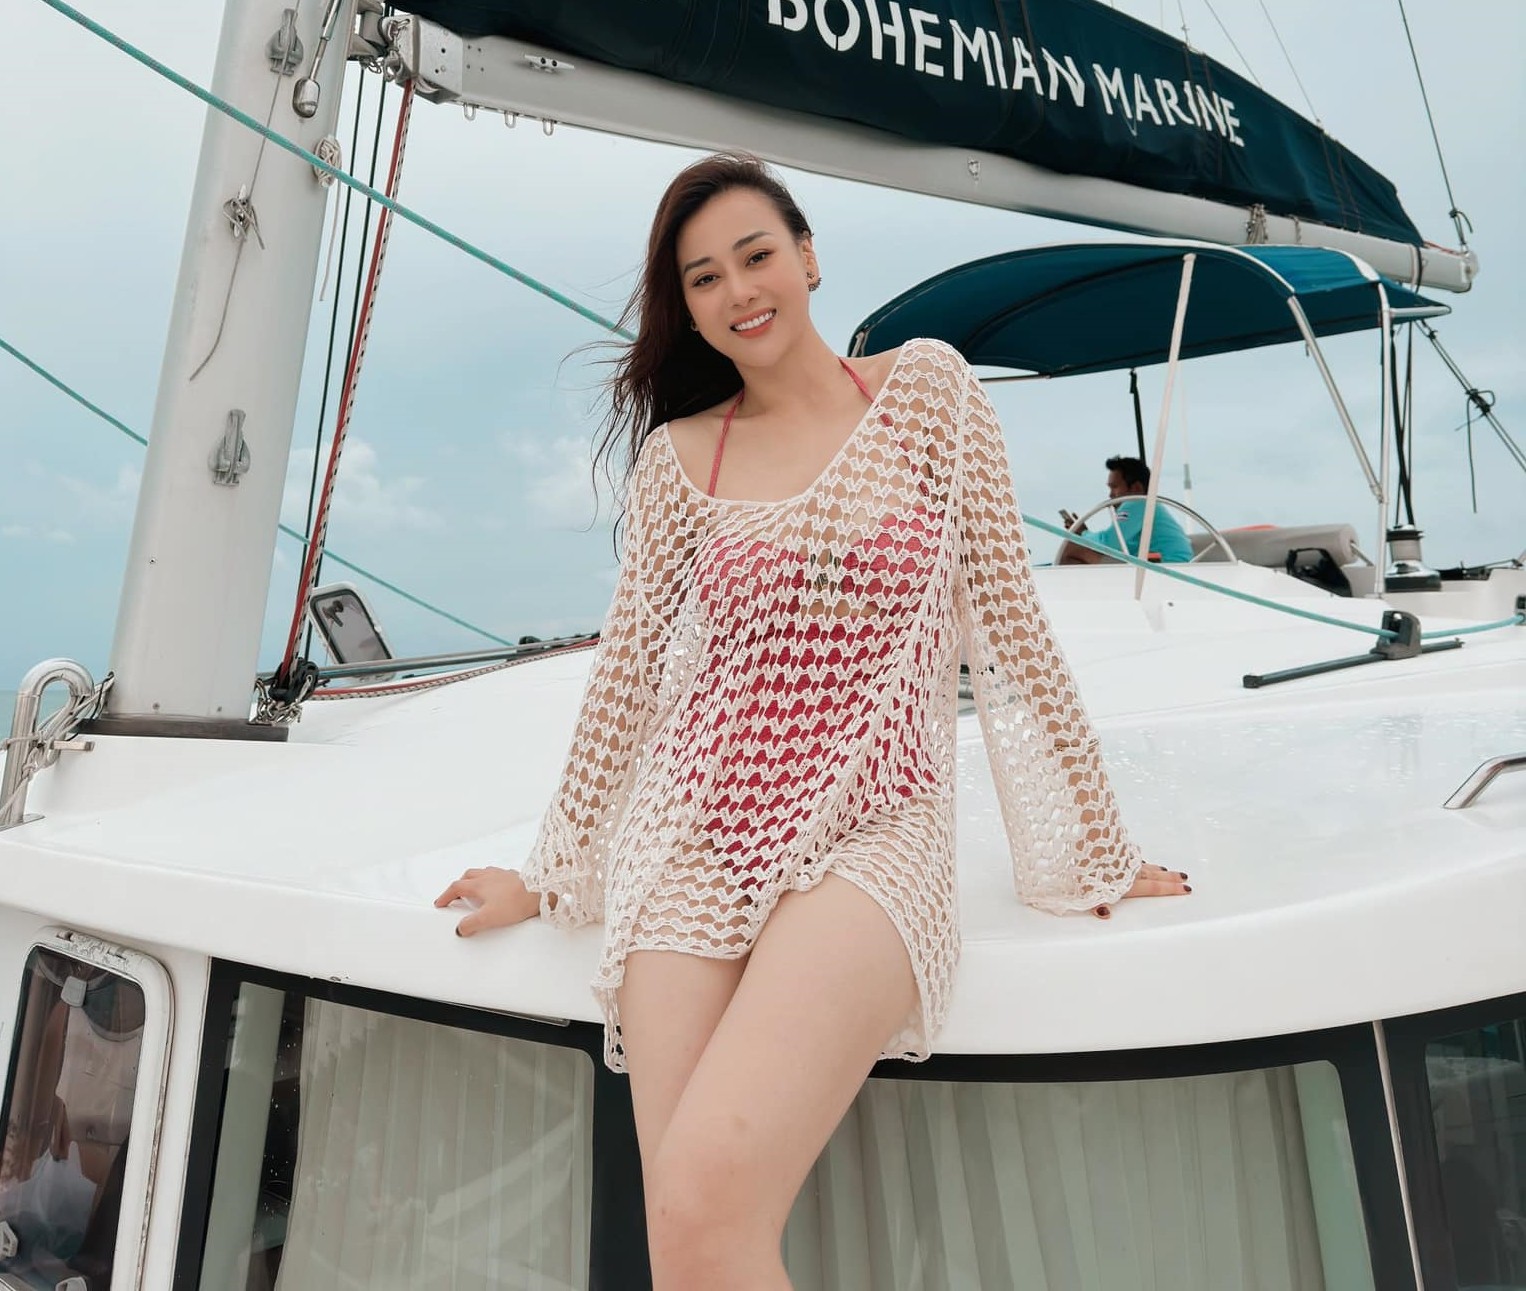 Phương Oanh mặc kín đi biển sau khi làm vợ Shark Bình? - 1